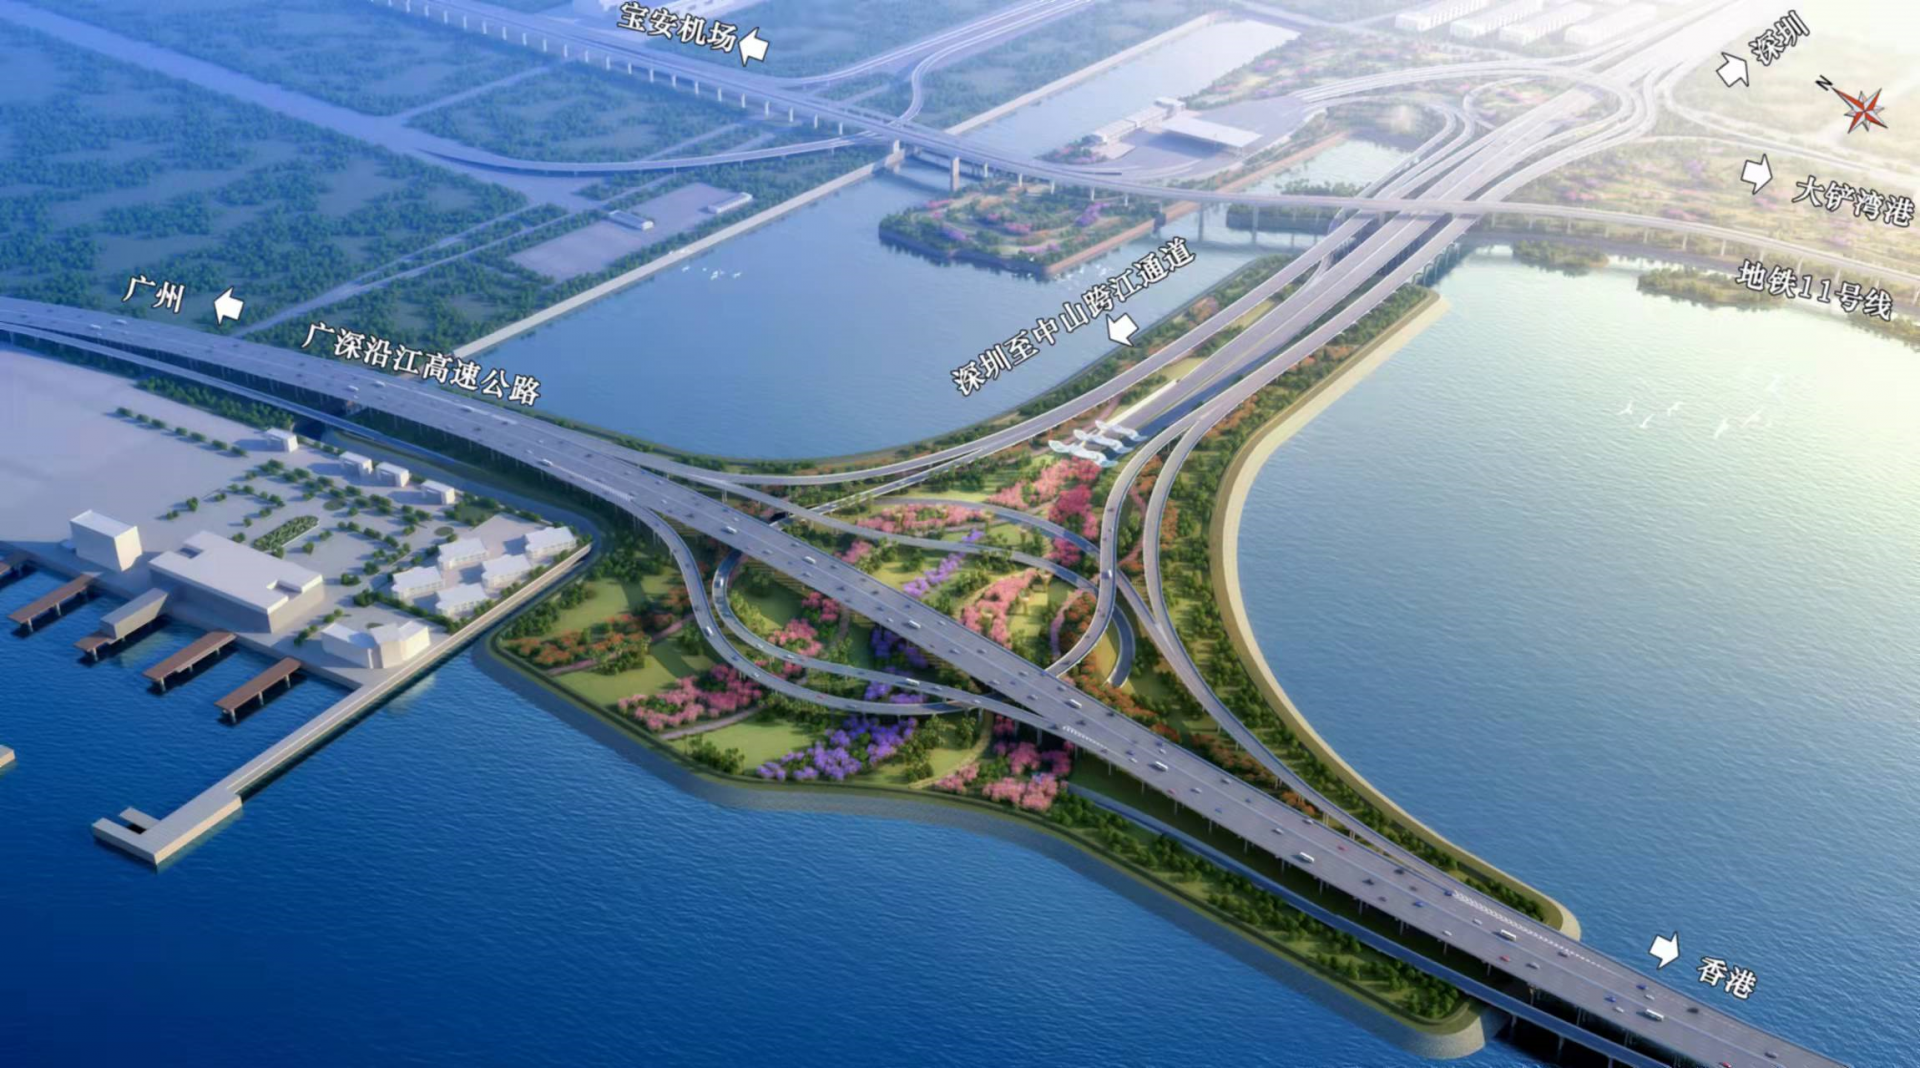 广深沿江高速深圳段二期工程第2合同段主线桥拉通